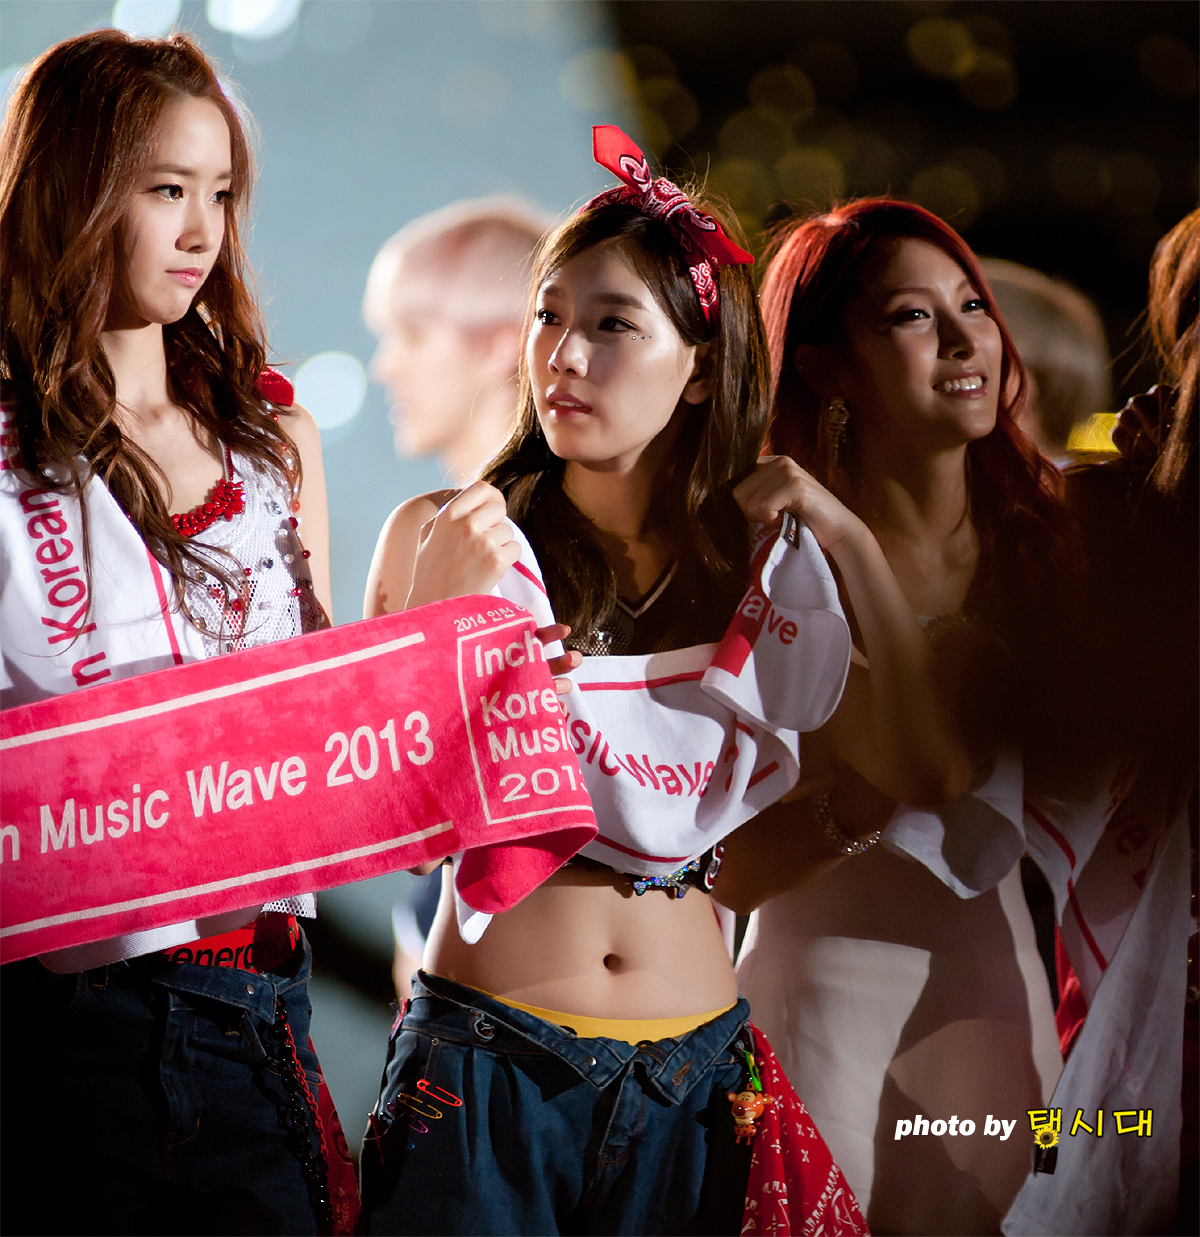 [PIC][01-09-2013]Hình ảnh mới nhất từ "Incheon Korean Music Wave 2013" của SNSD và MC YulTi vào tối nay - Page 4 2169A03F5229D9F1088B78